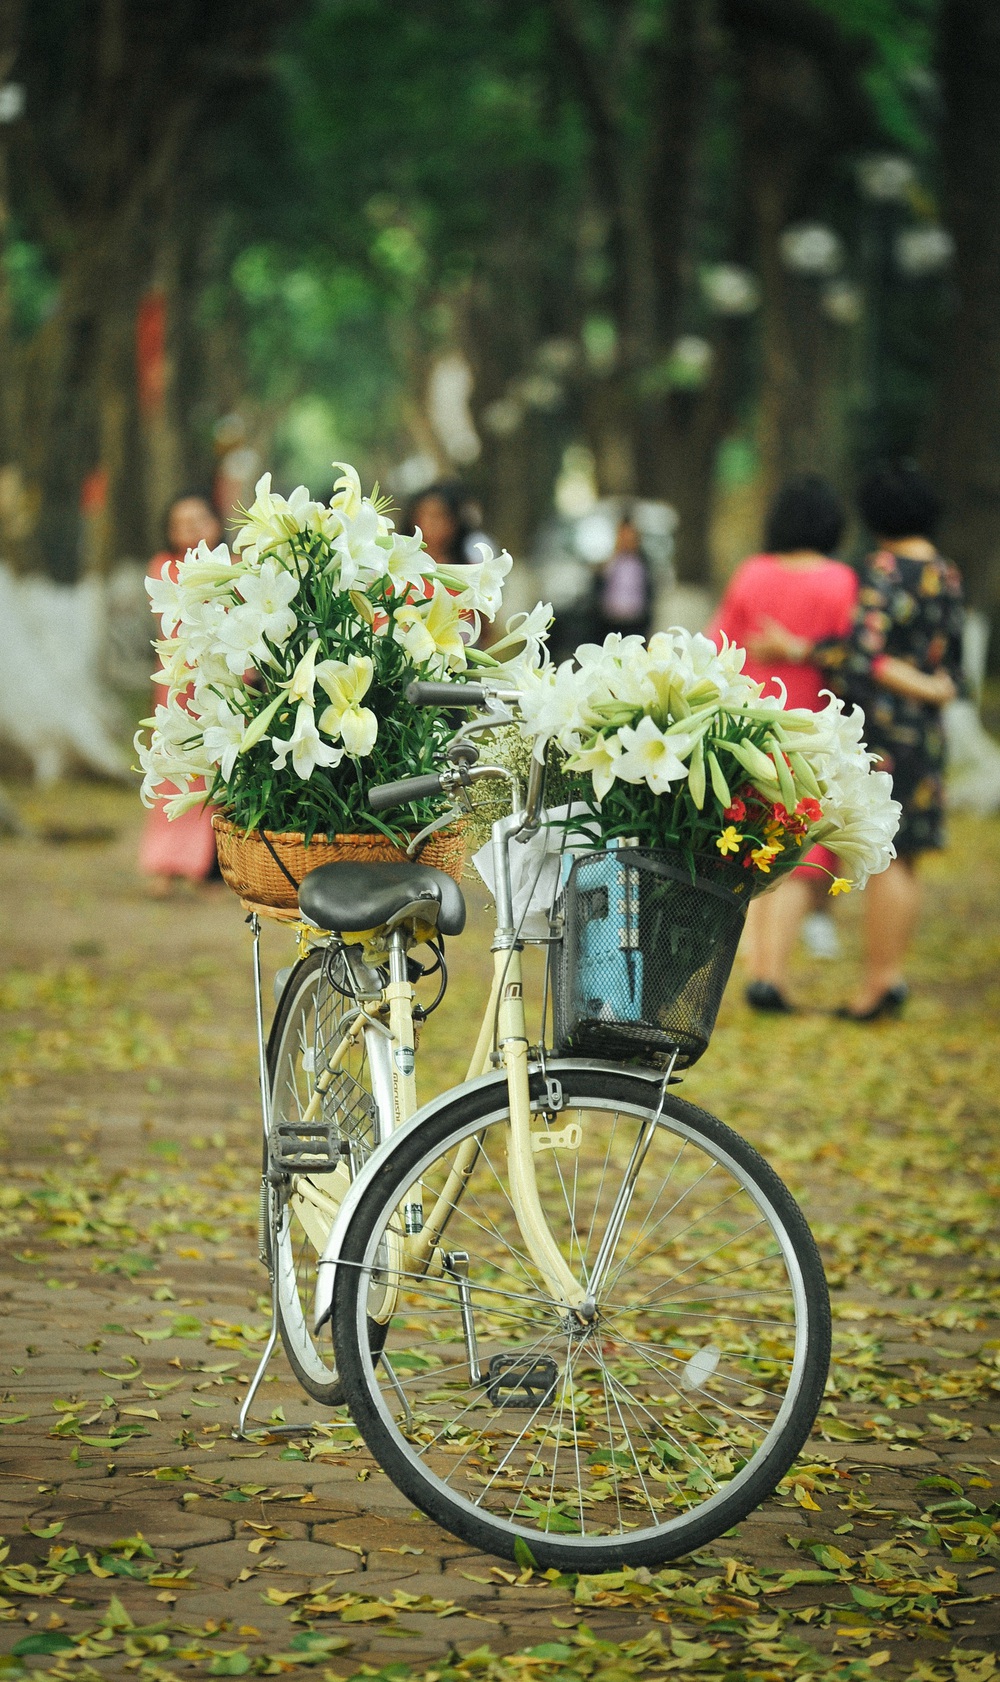 Hà Nội – nơi đã từng là thủ đô của Việt Nam, cũng là nơi có rất nhiều loại hoa độc đáo, trong đó phải kể đến loa kèn Hà Nội. Loài hoa này có một màu sắc rực rỡ, đặc biệt và khiến con người không thể không chú ý đến. Nhấn vào hình ảnh loa kèn Hà Nội để xem những bức ảnh ấn tượng nhất về loài hoa này nhé!